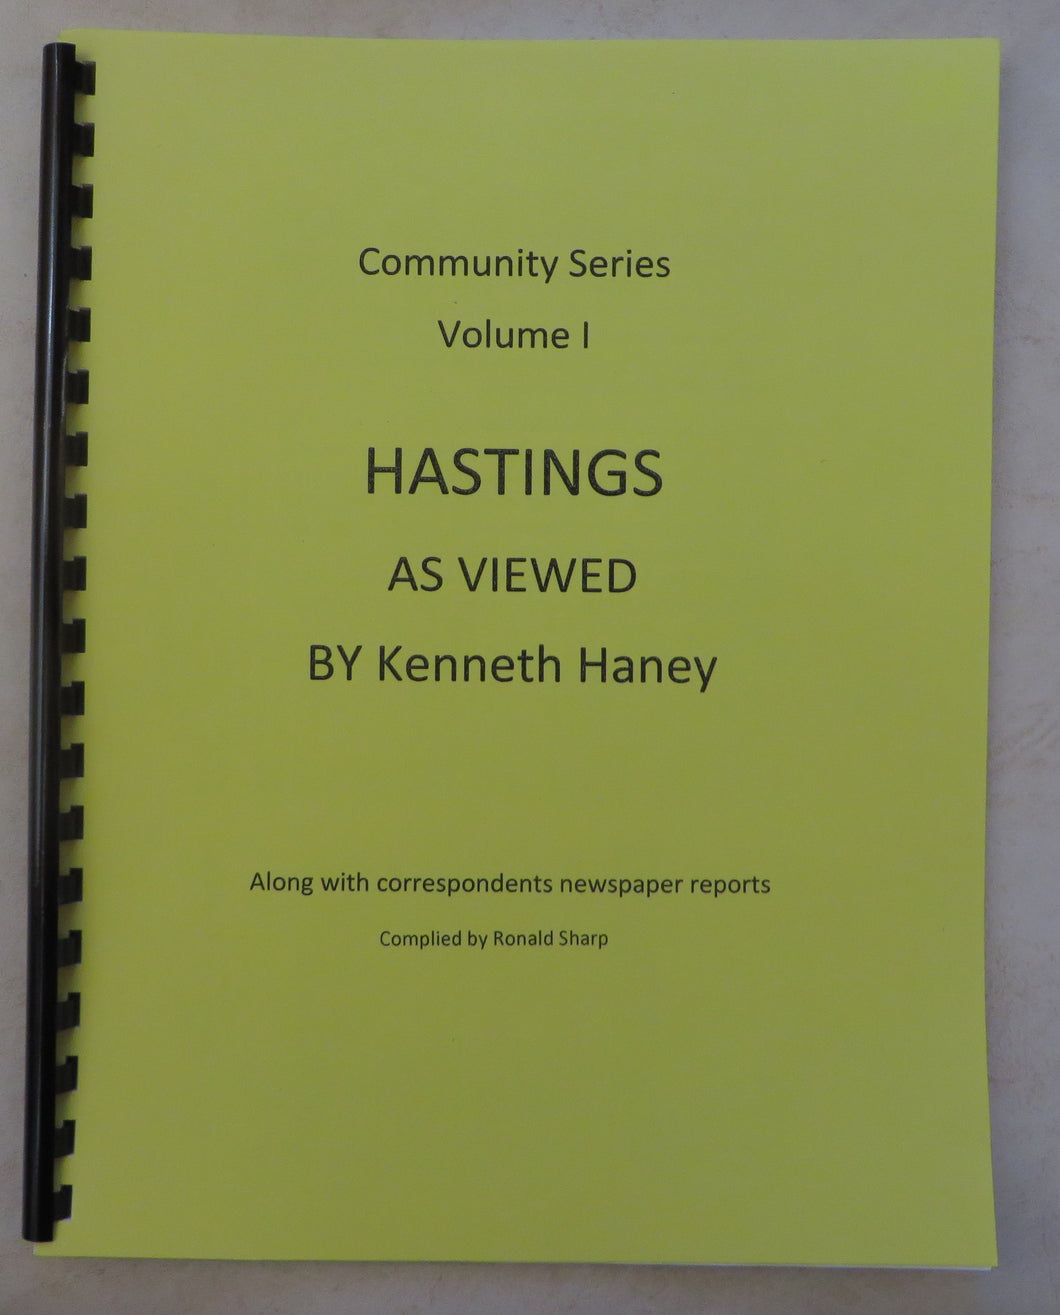 Community Series, Volume 1, Hastings - As Viewed by Kenneth Haney